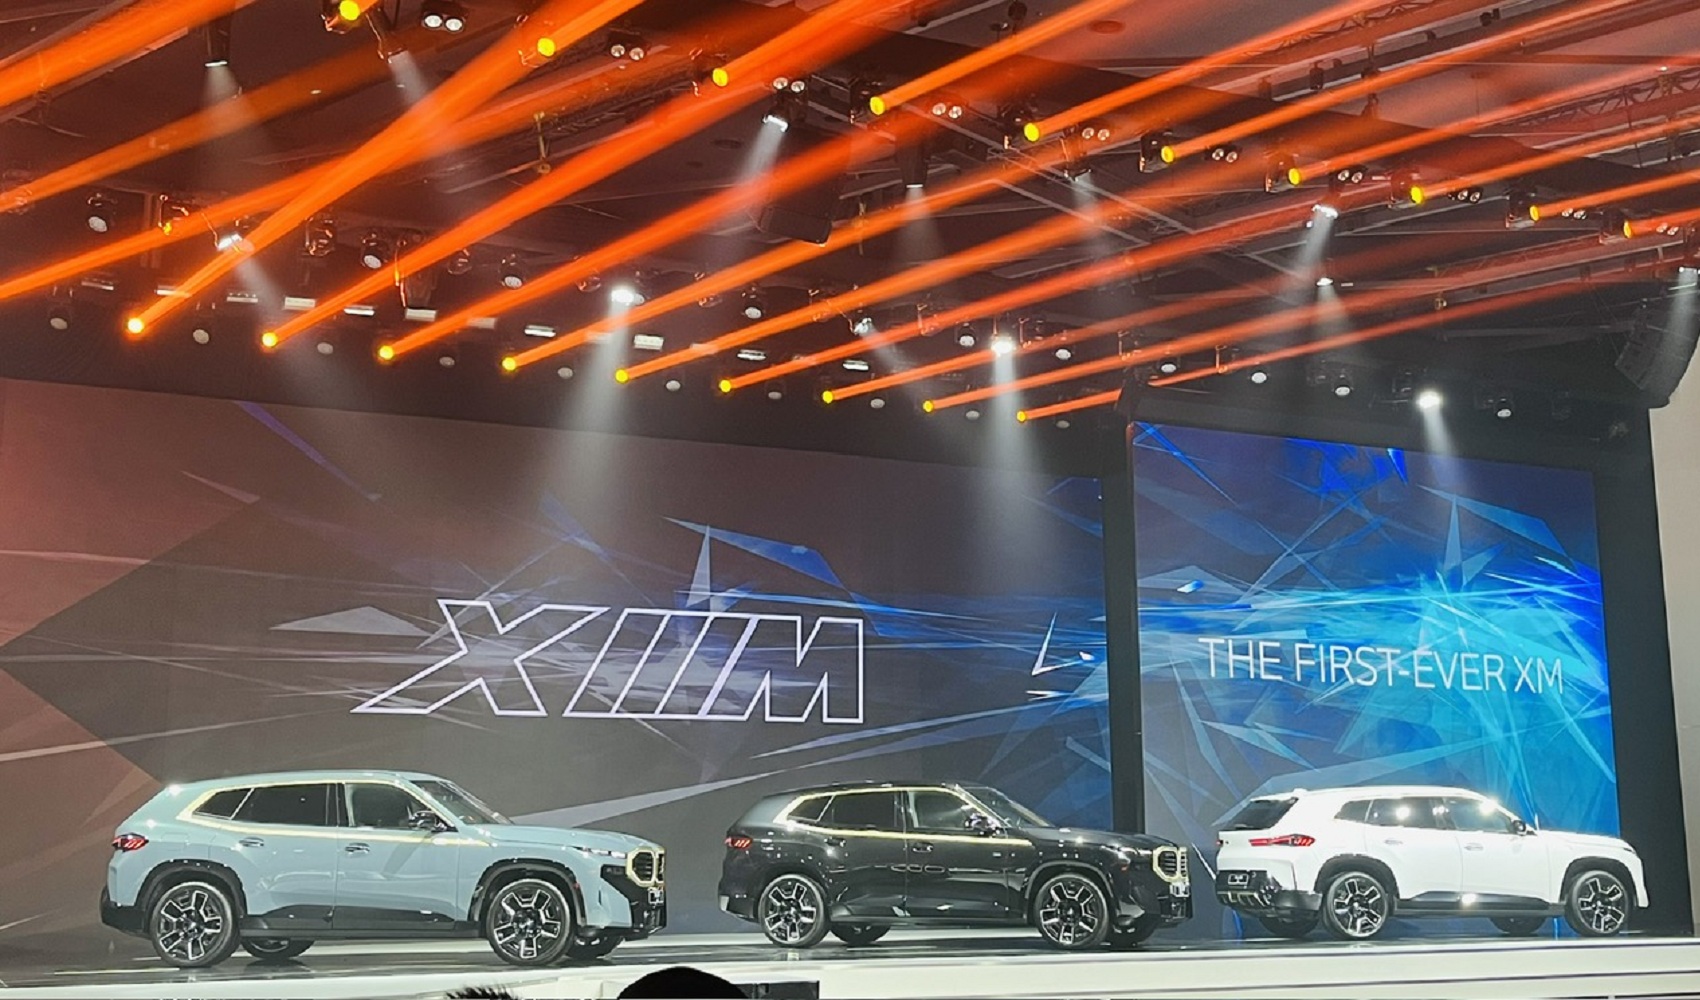 Ra mắt bộ đôi BMW X5 mới và BMW XM thế hệ đầu tiên tại Việt Nam